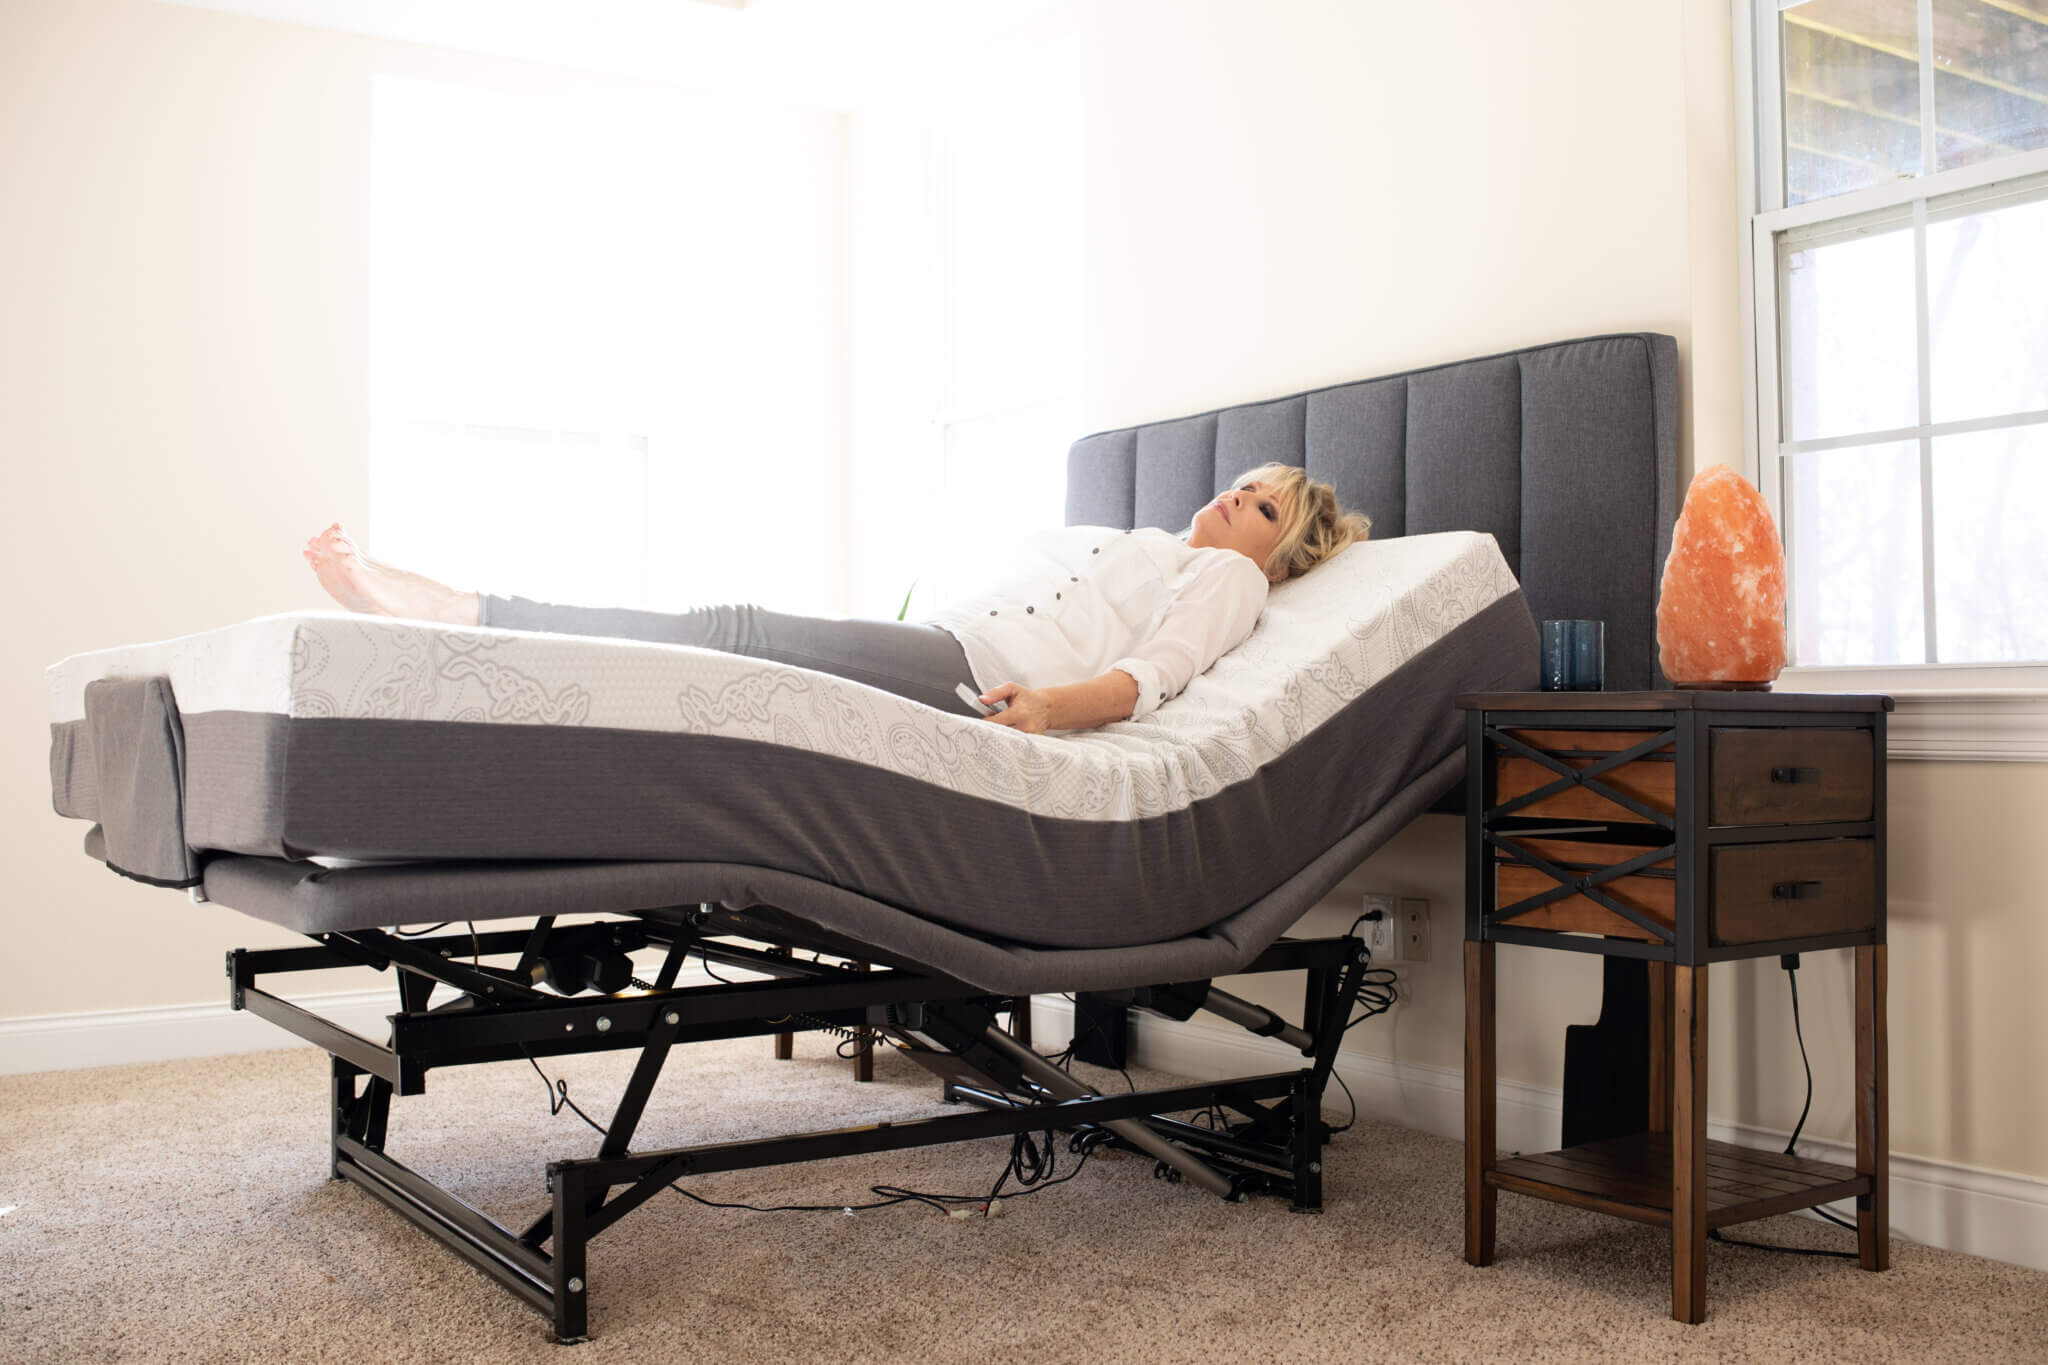 flex-a-bed replacement mattress